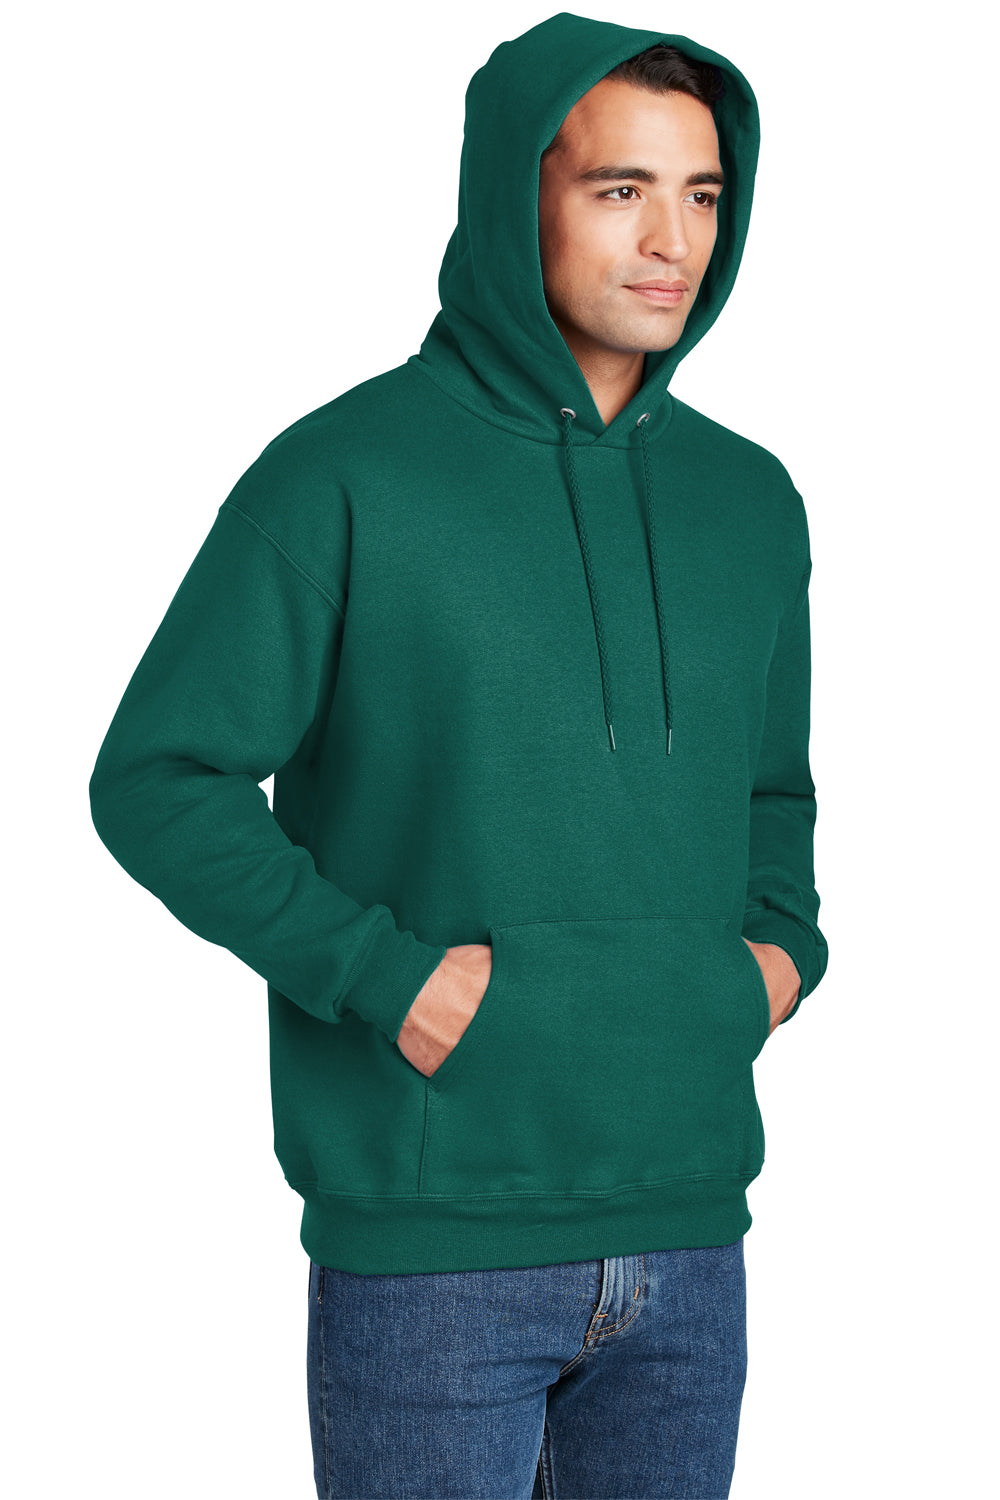 Hanes Mens Ultimate Cotton PrintPro XP Hooded Sweatshirt Hoodie Cactus Green 3Q